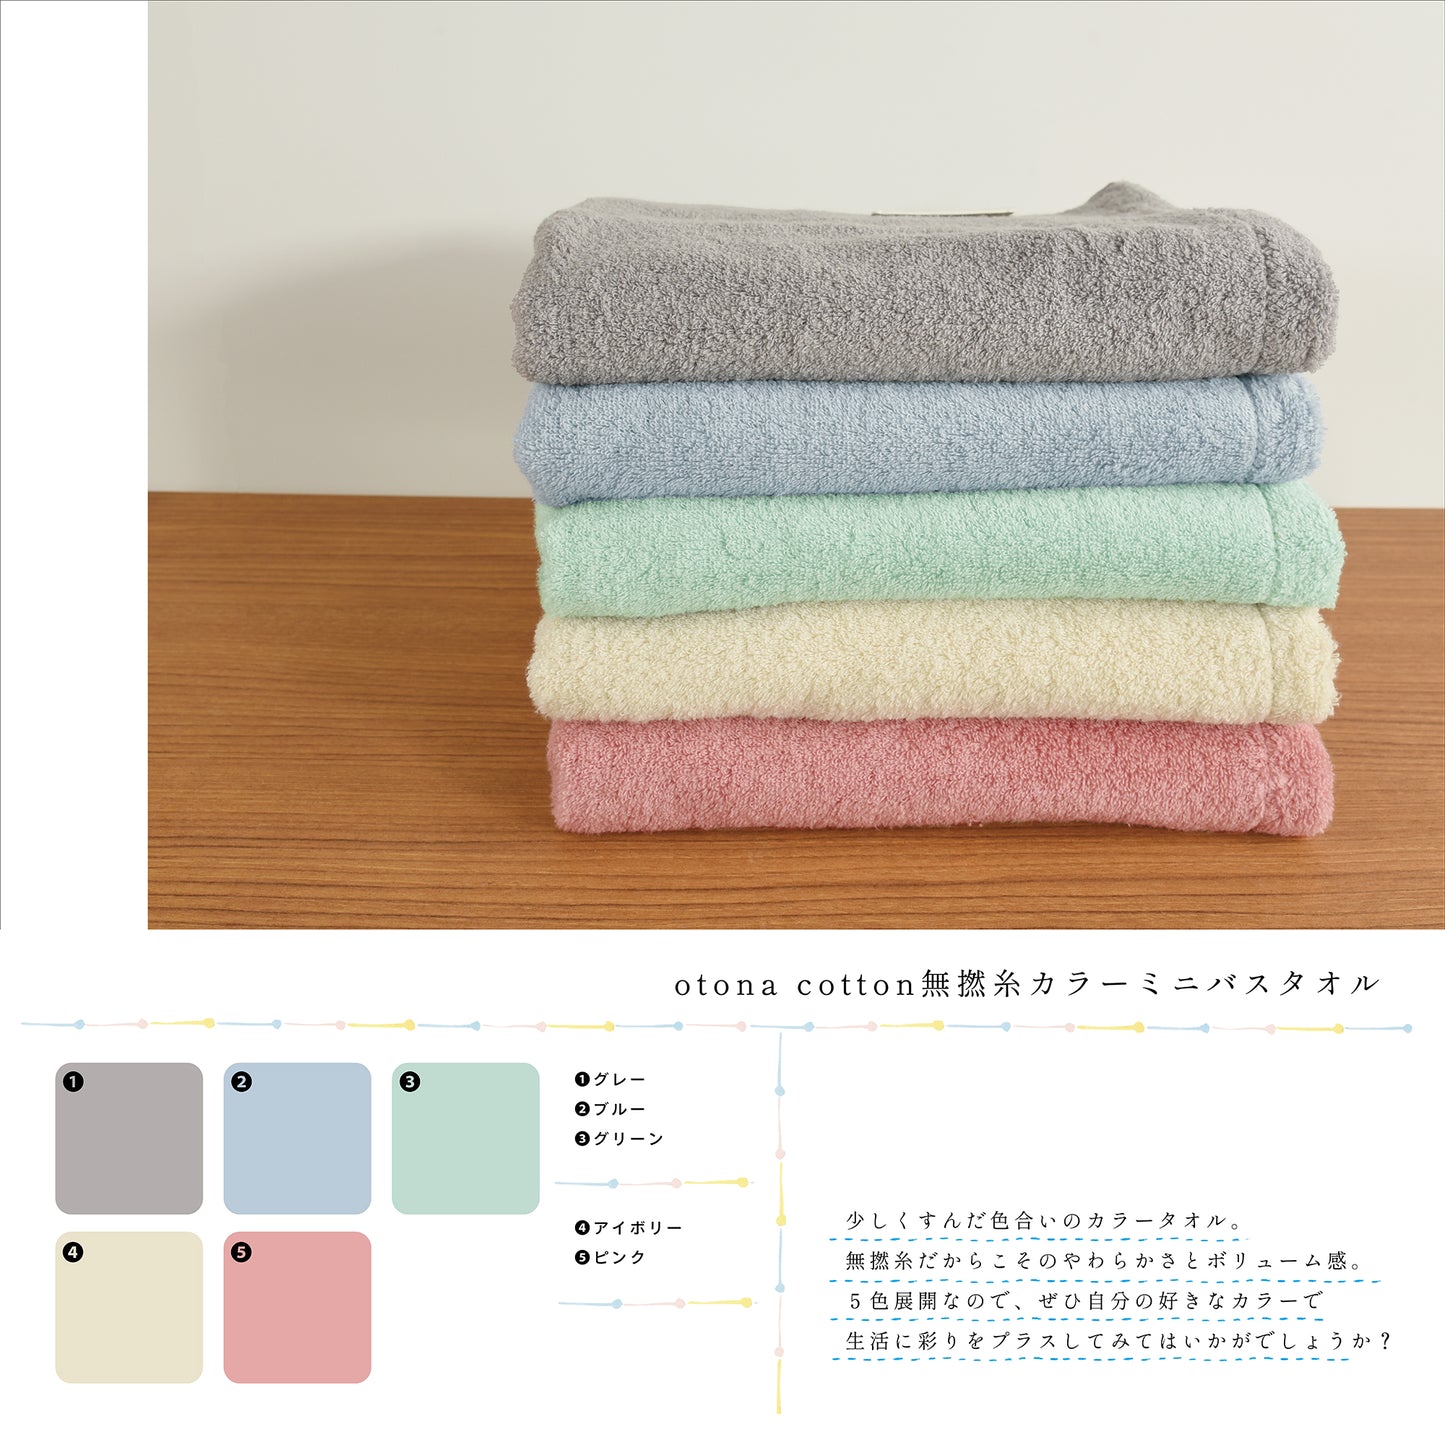 otona cotton/無撚糸カラー ミニバスタオル